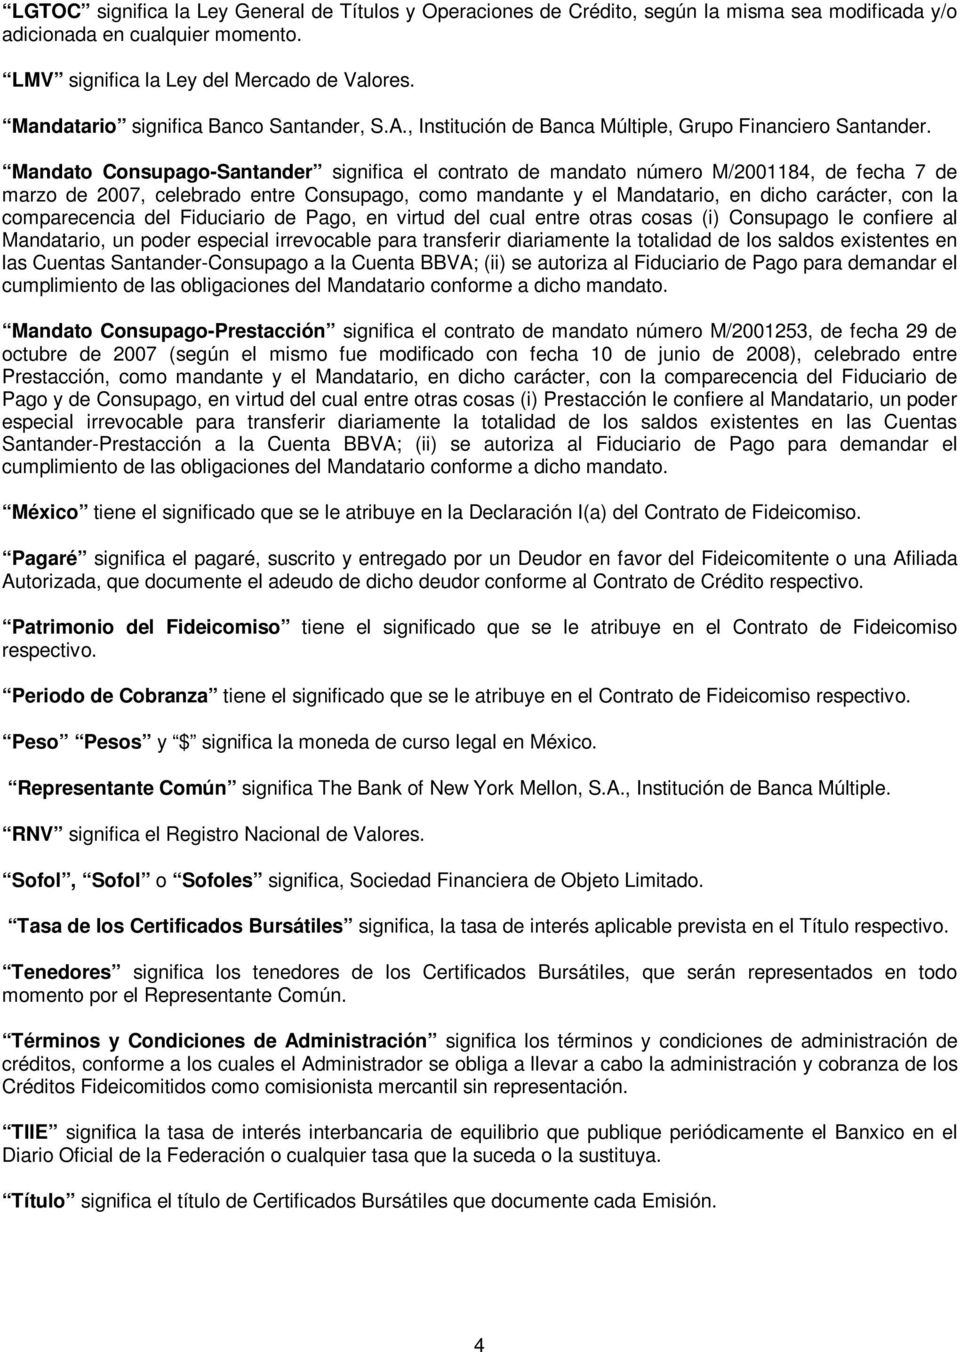 Mandato Consupago-Santander significa el contrato de mandato número M/2001184, de fecha 7 de marzo de 2007, celebrado entre Consupago, como mandante y el Mandatario, en dicho carácter, con la